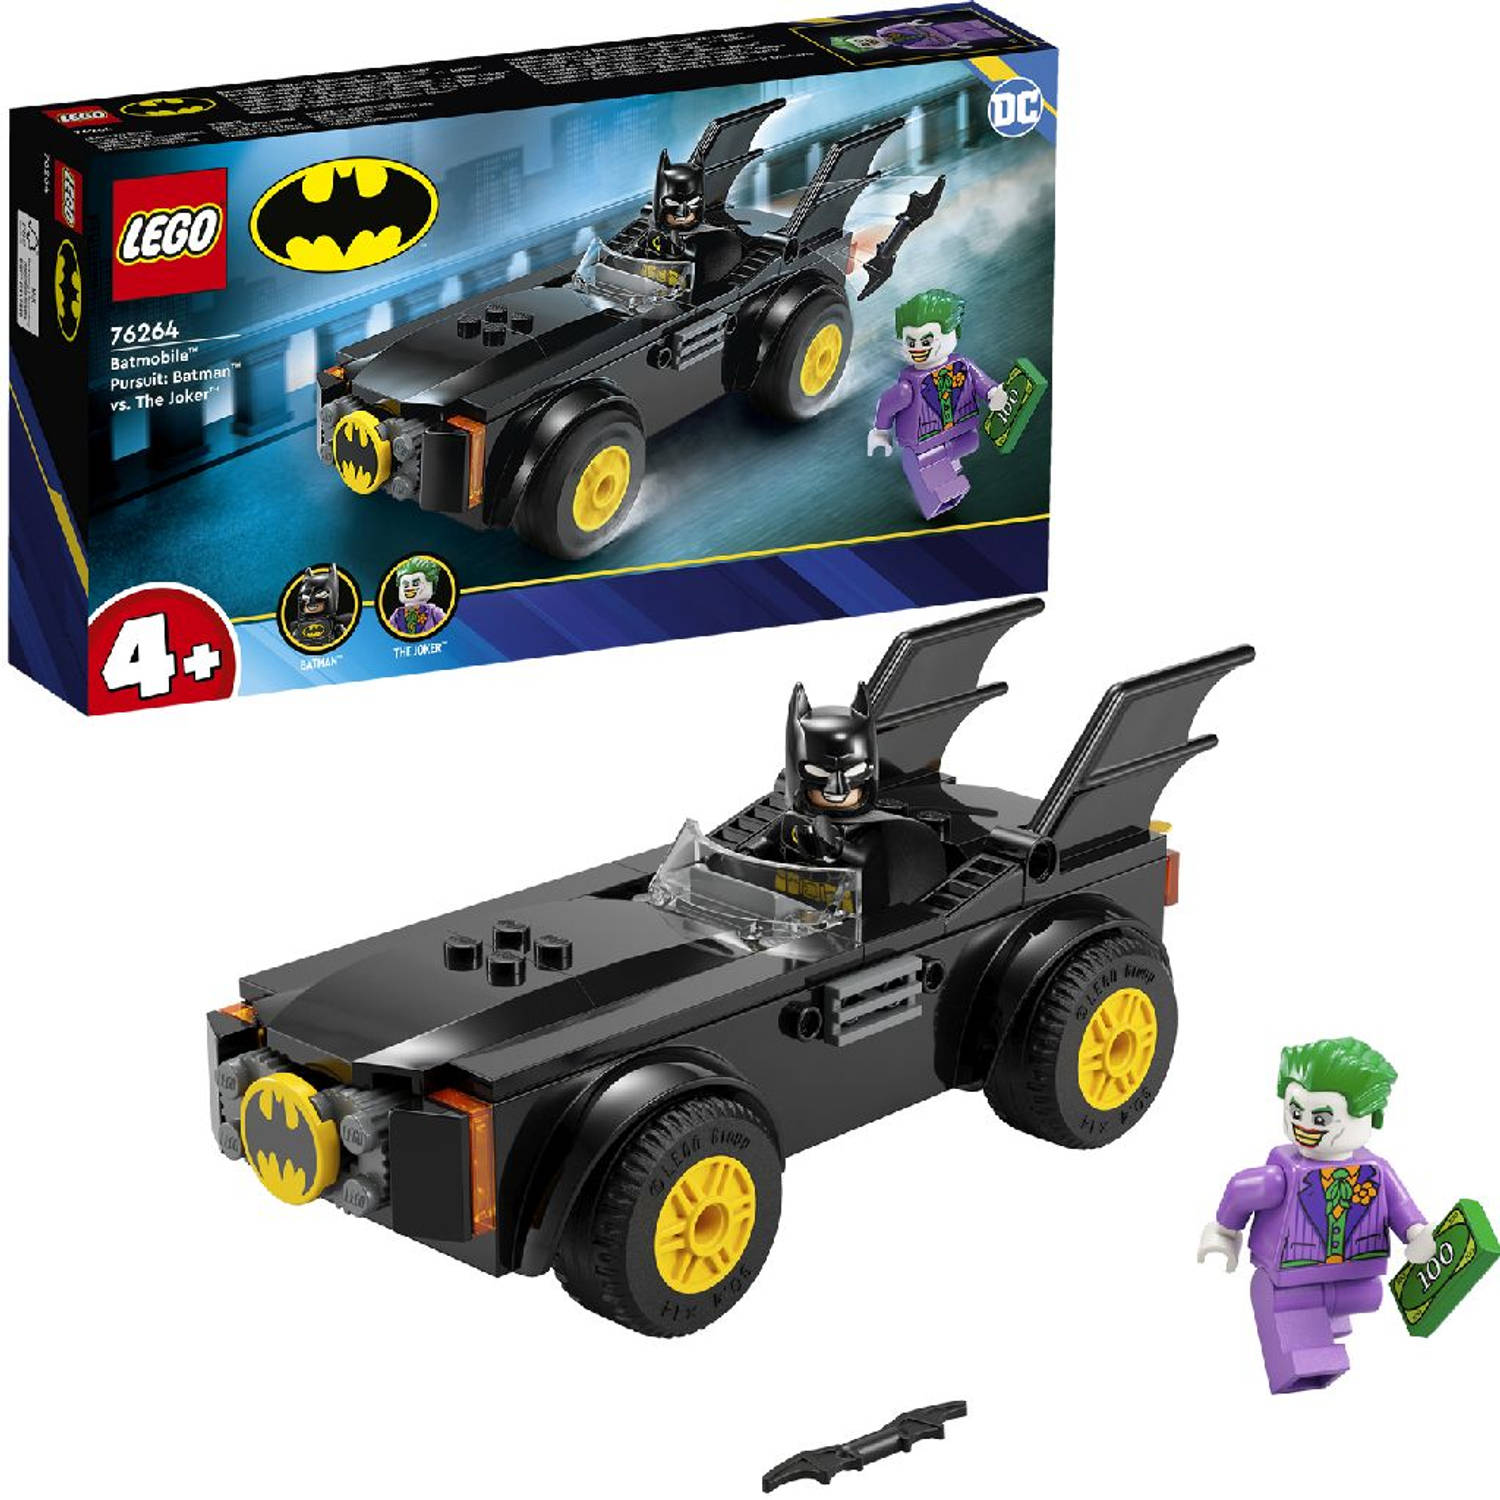 LEGOÂ® DC Batmobile 76264 achtervolging: Batman vs. The Joker